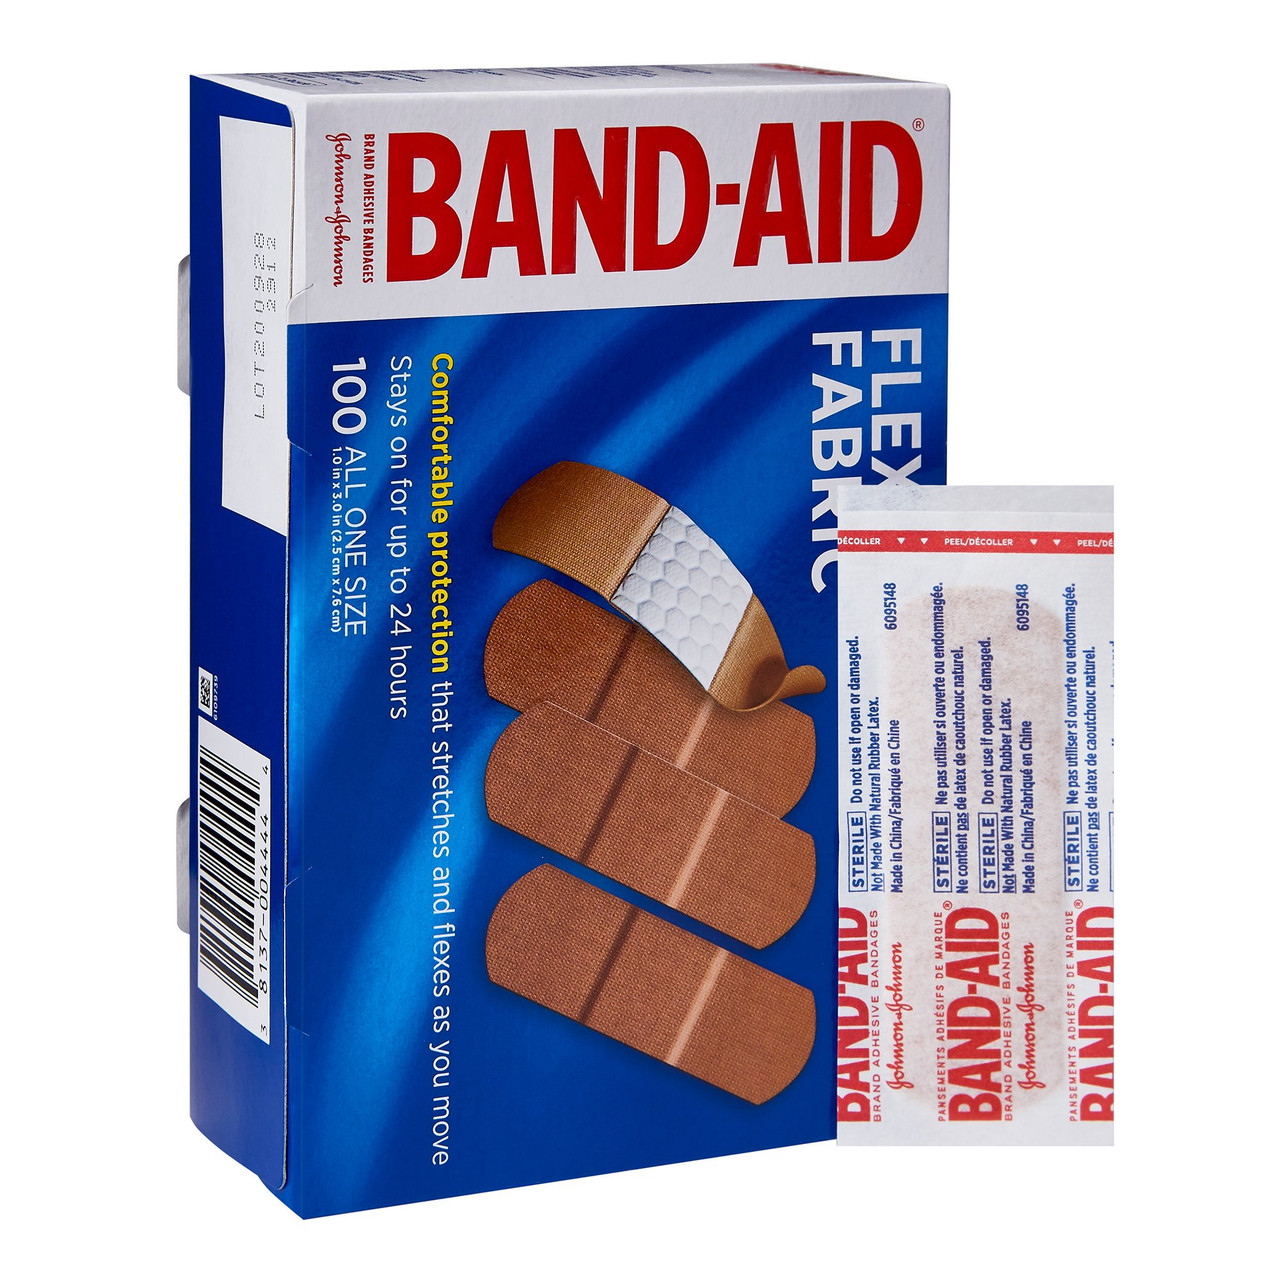 Adhesive Bandages —